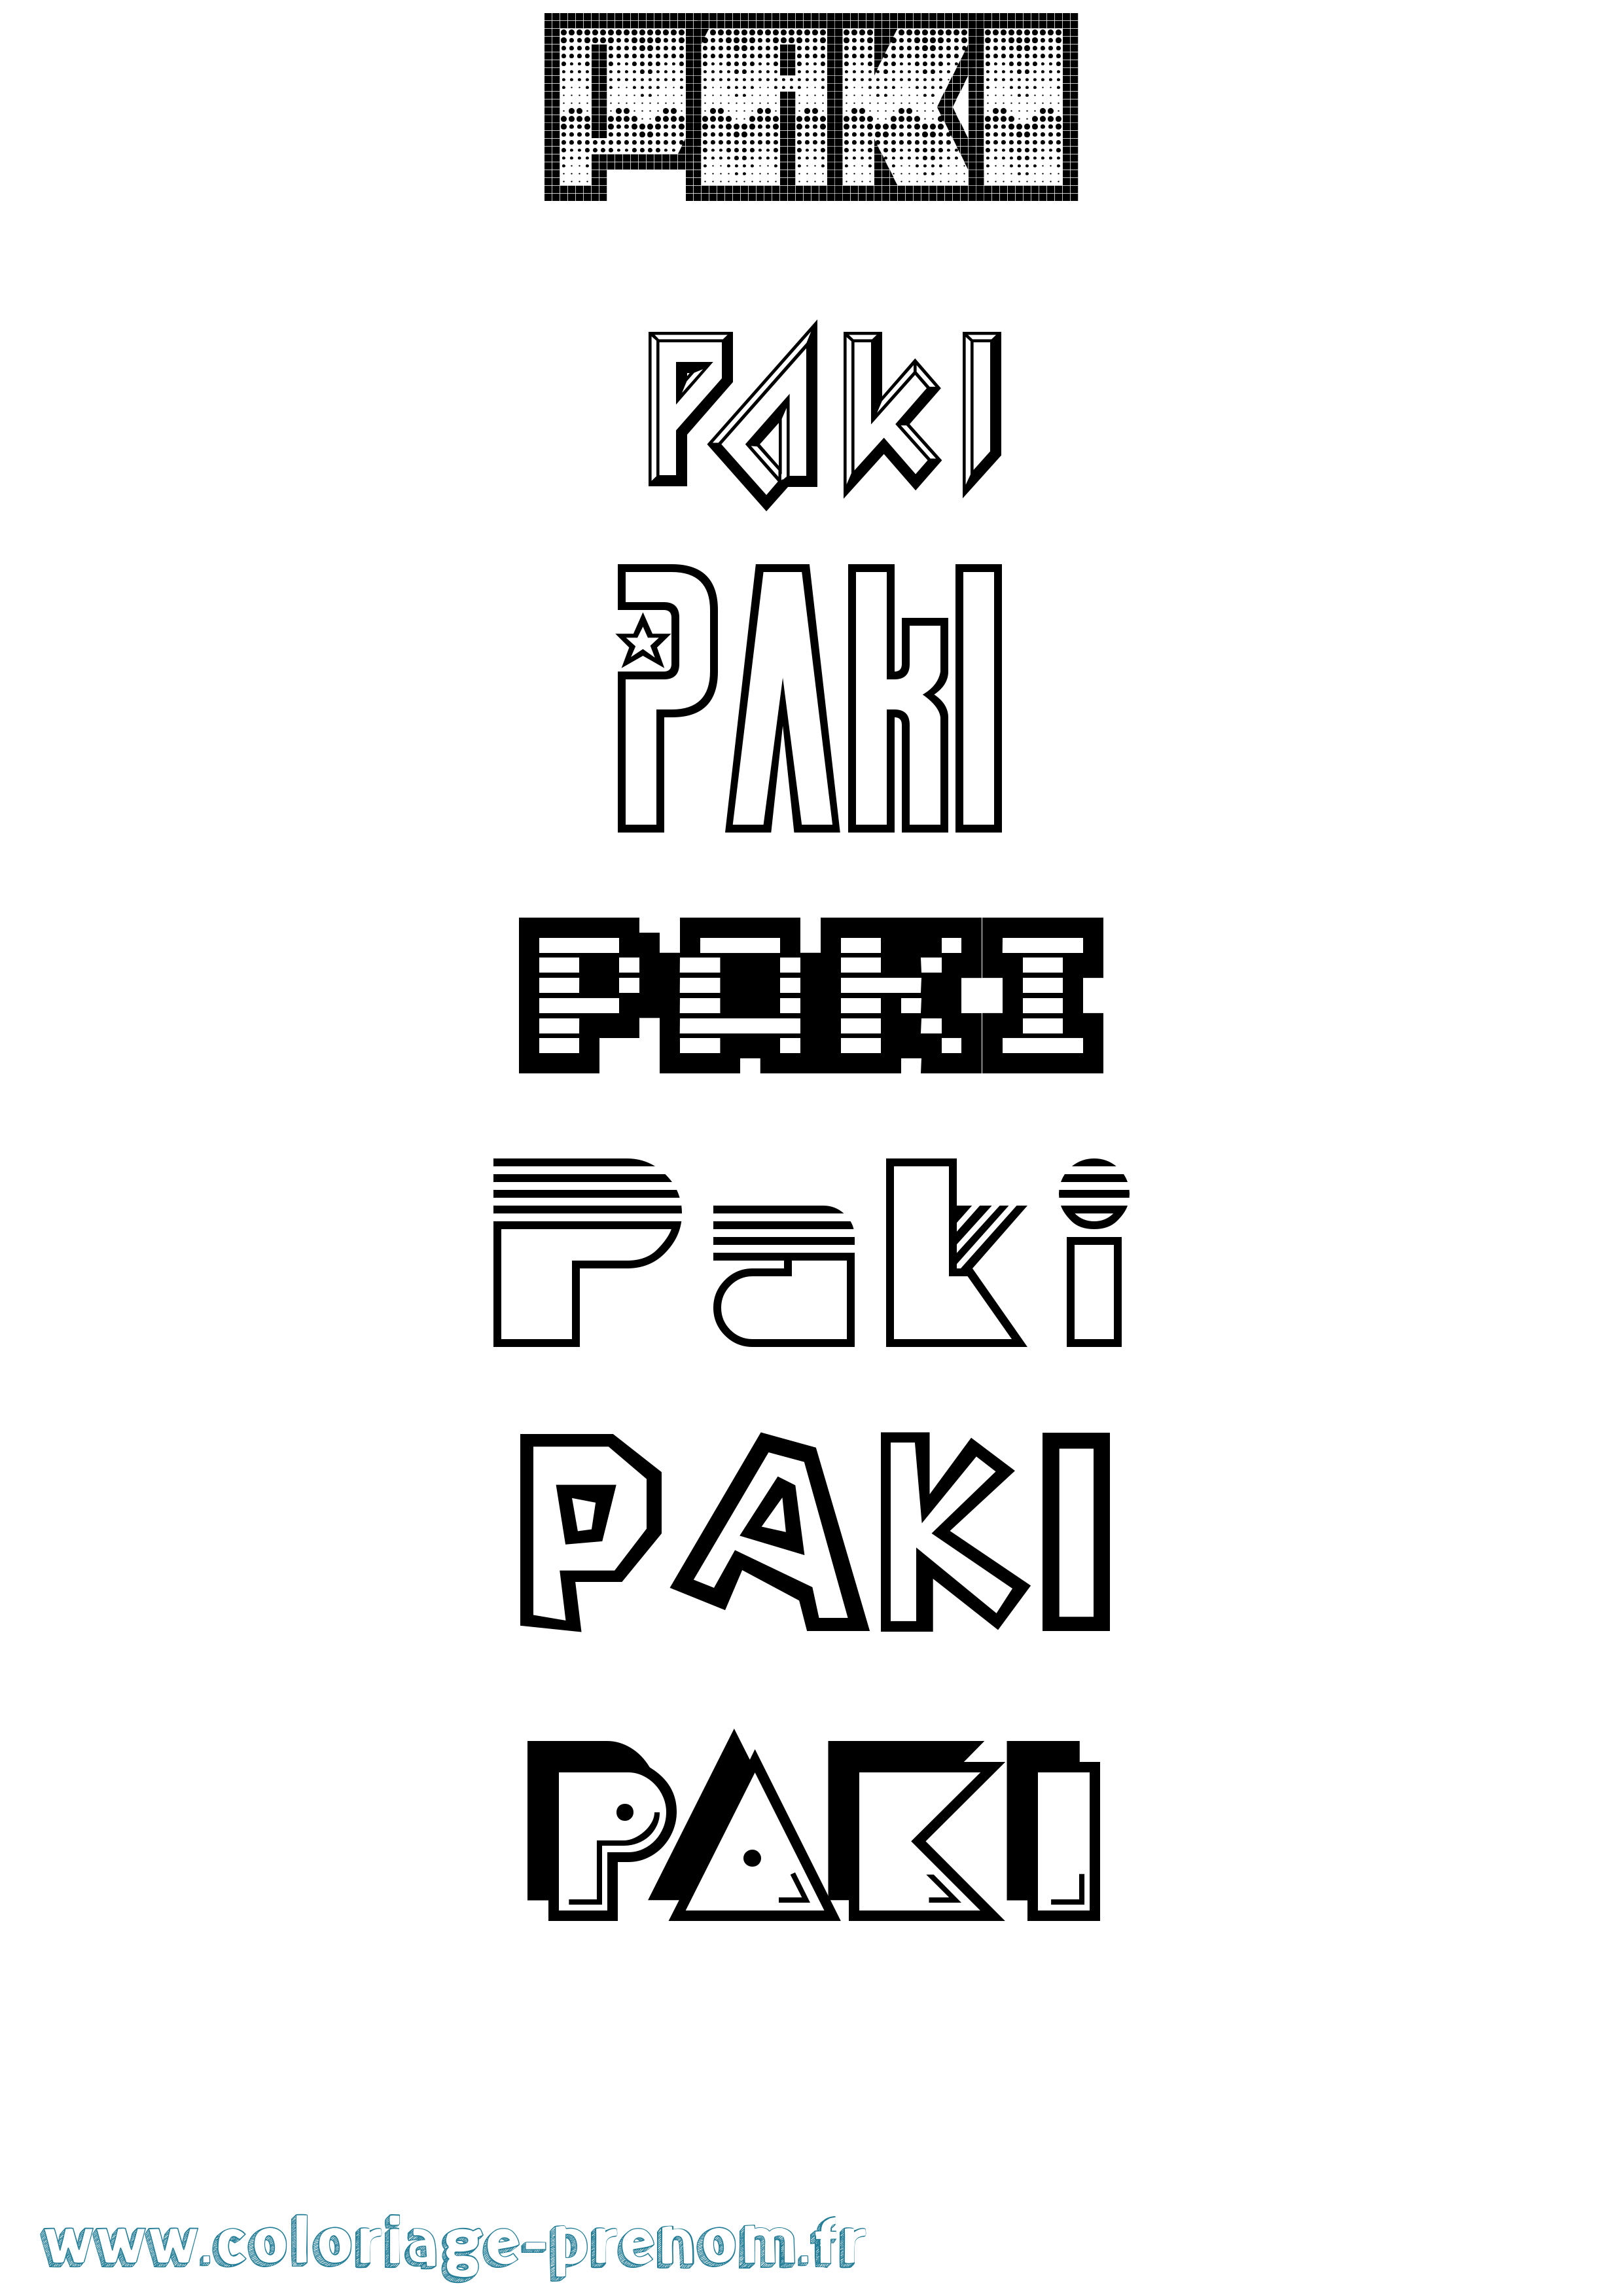 Coloriage prénom Paki Jeux Vidéos